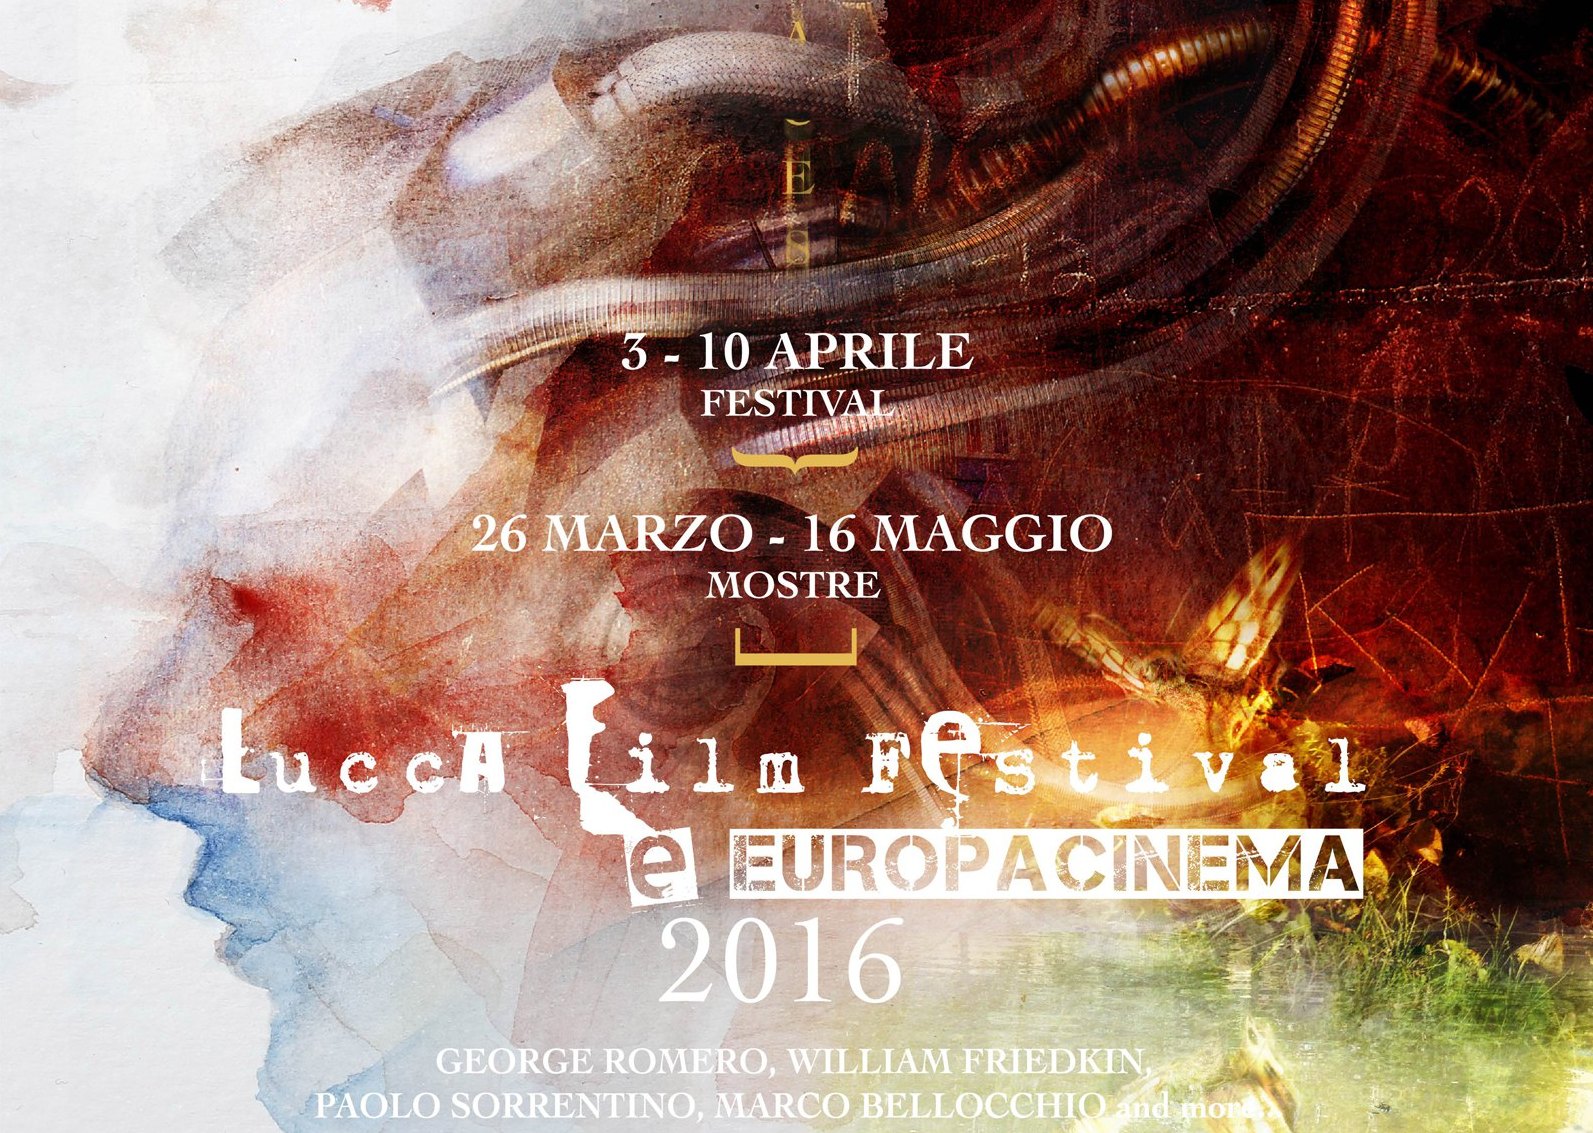 Lucca Film Festival e Europa Cinema 2016: i film in concorso